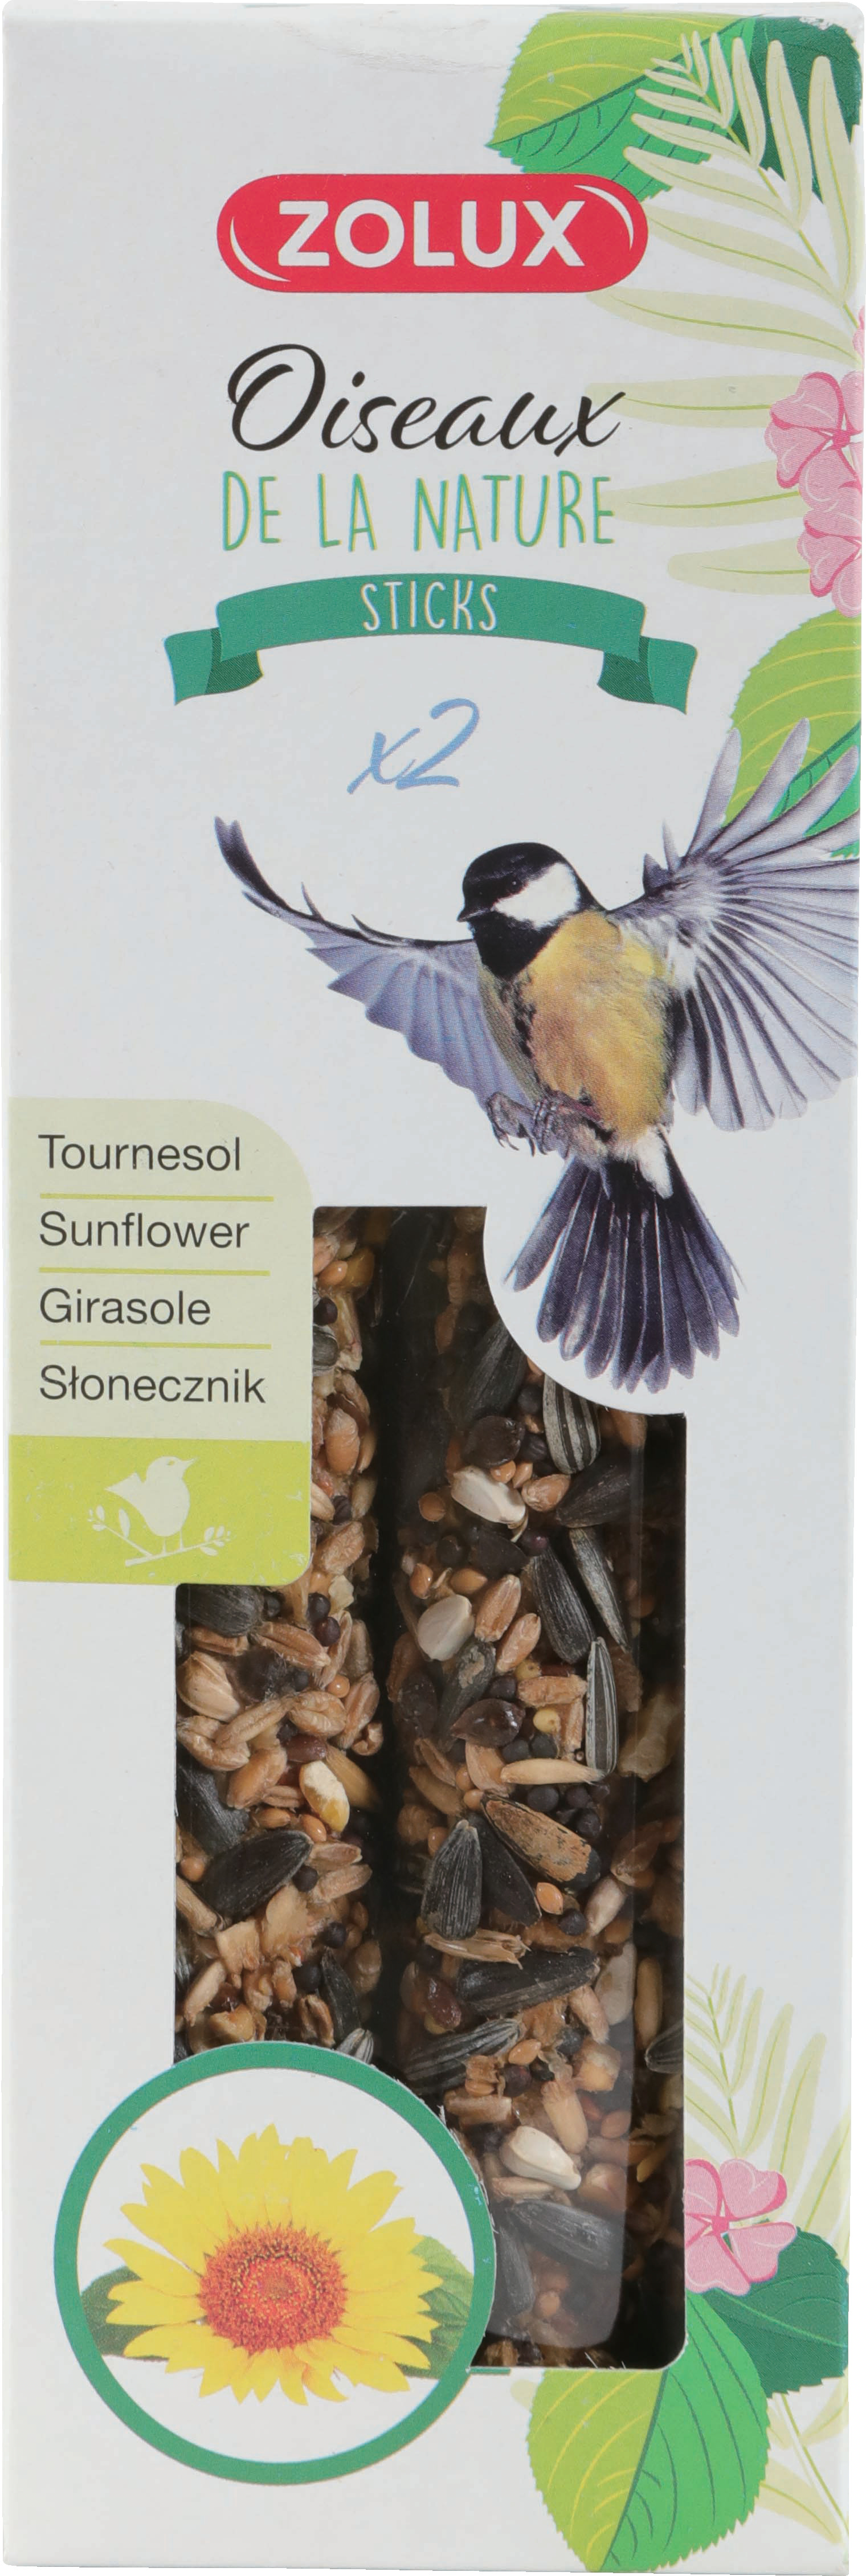 Tournesol Décortiqué 800g Pour Oiseaux De La Nature Zolux : le